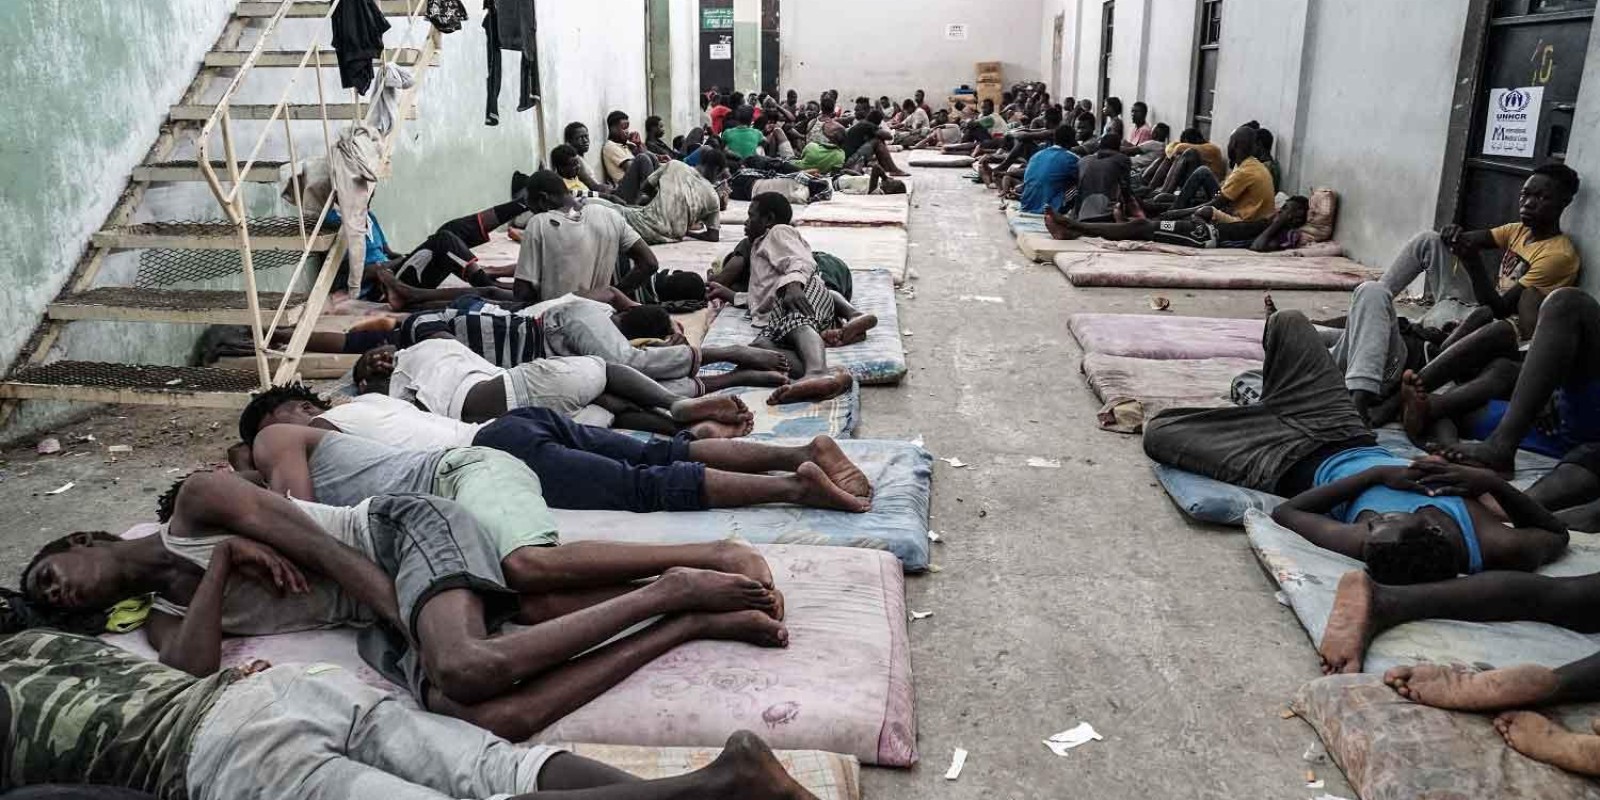 Leilão de escravos na Líbia causa indignação em toda a África